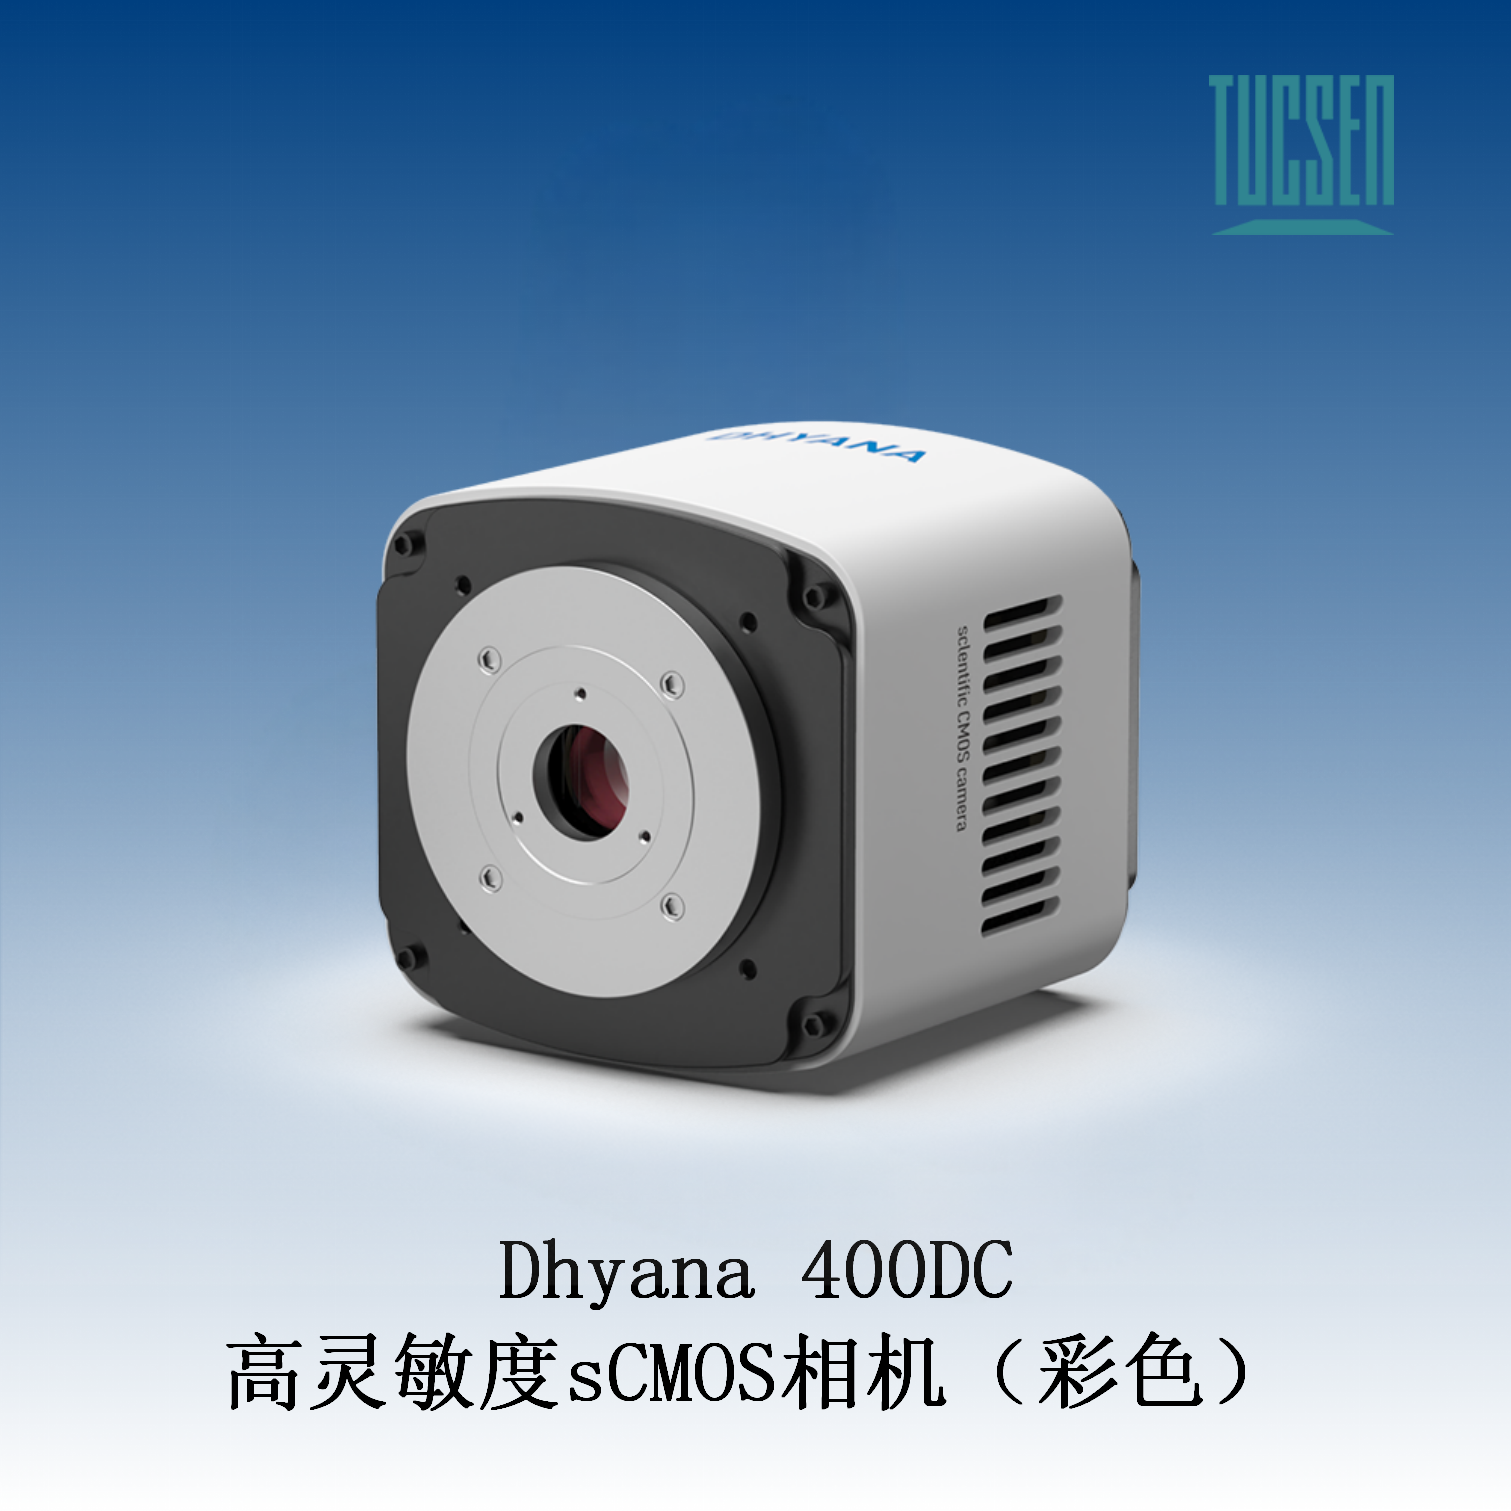 鑫图Dhyana 400DC 高灵敏度sCMOS相机（彩色）宽视野和卓越的动态范围